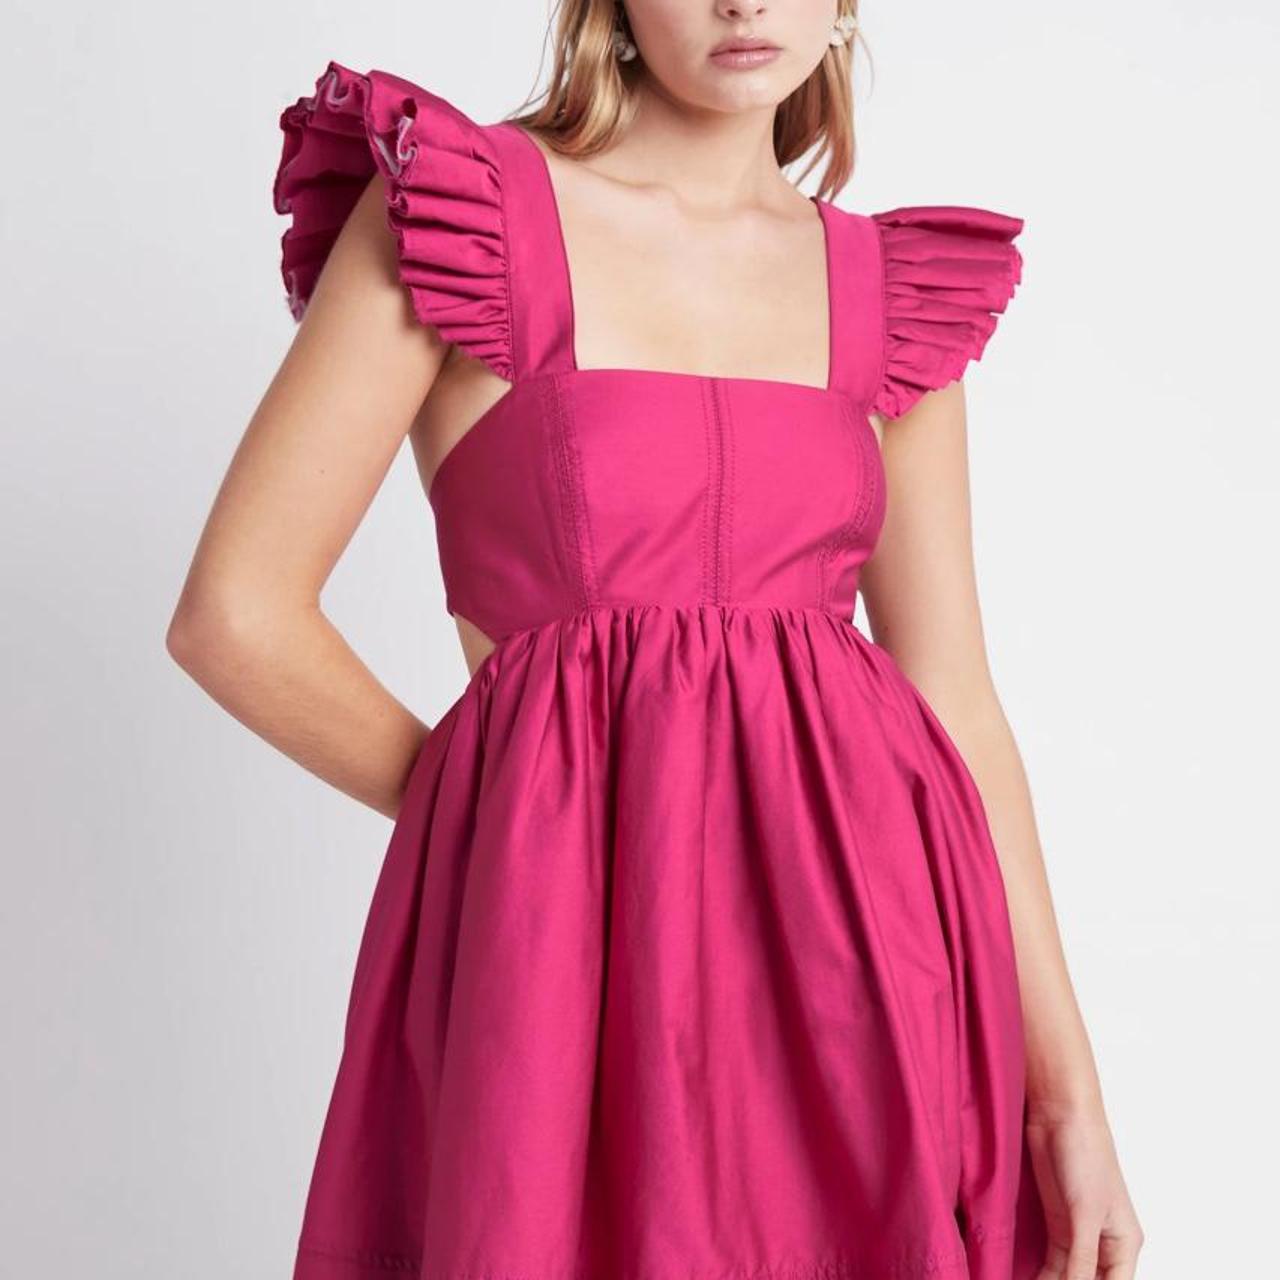 Beautiful Aje pink mid-summer mini dress. So fun to... - Depop